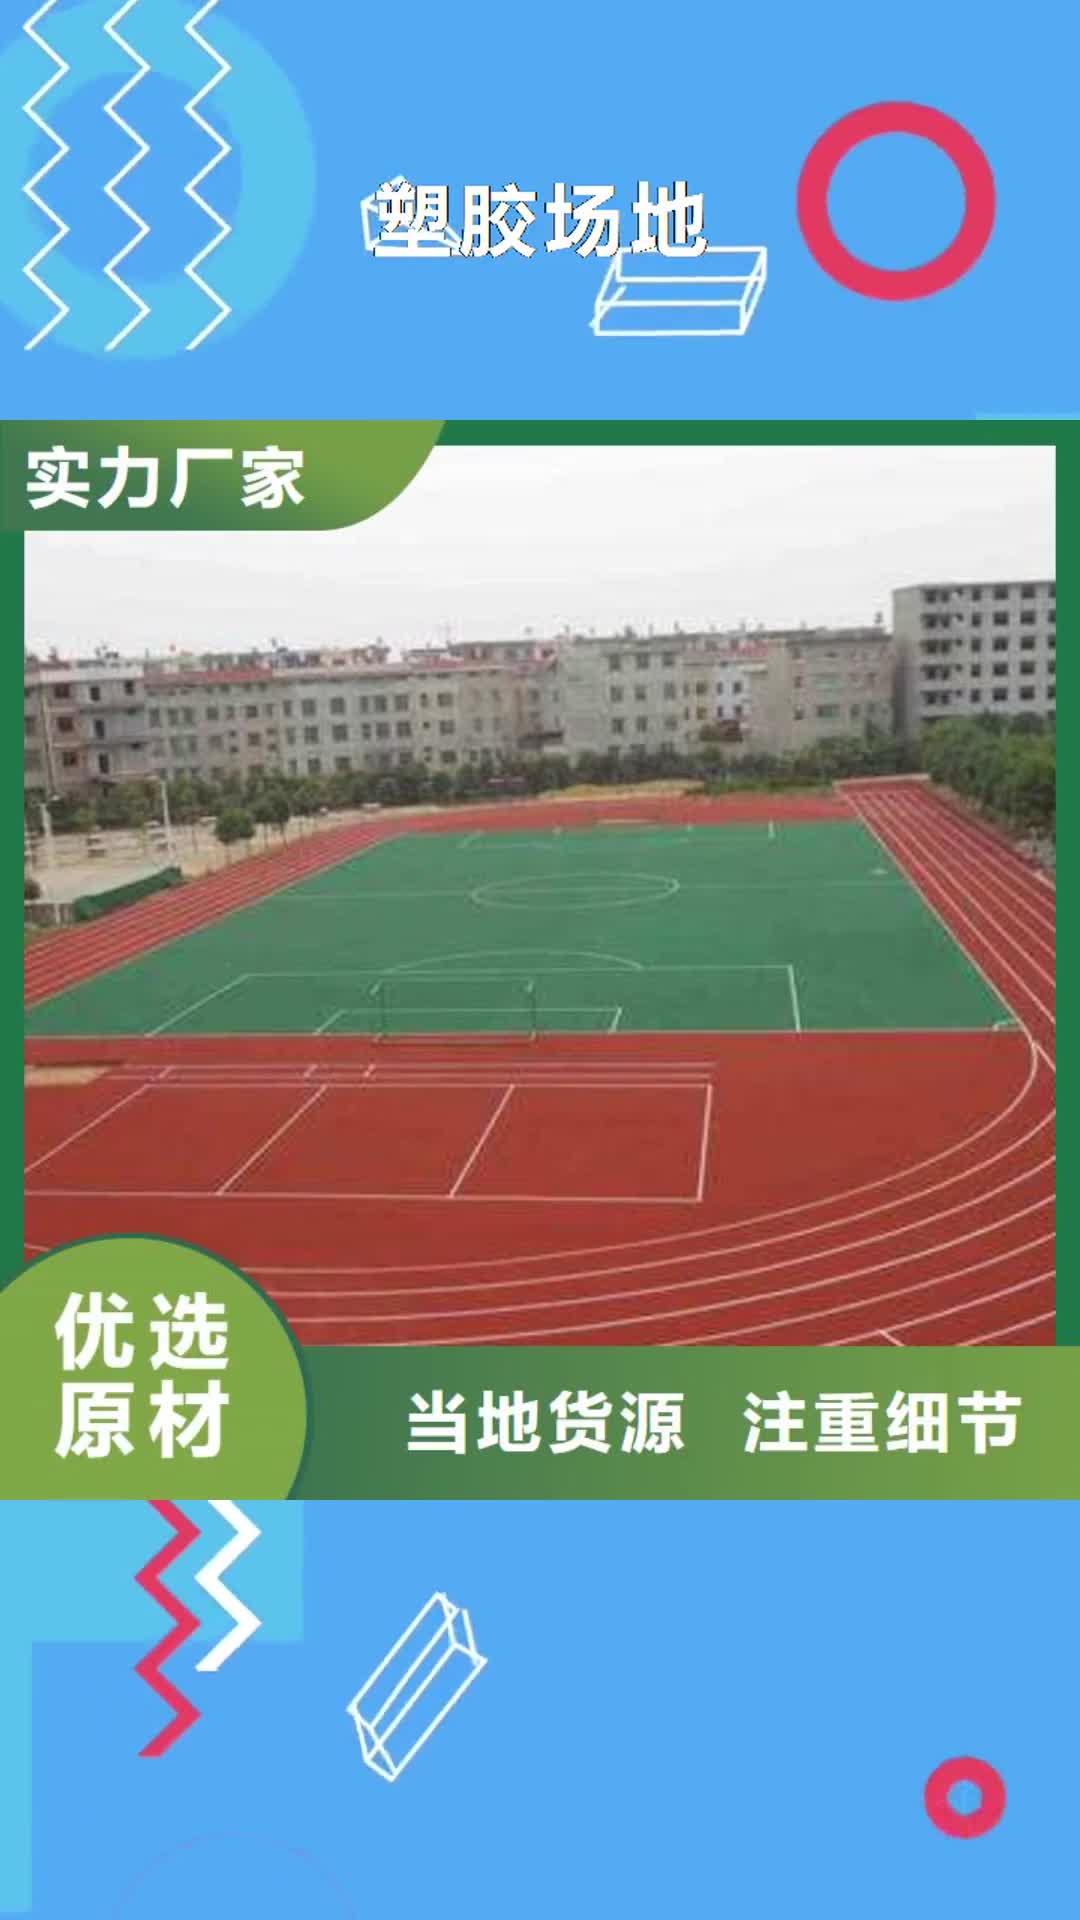 四川【塑胶场地】,篮球场建设施工品质保障售后无忧